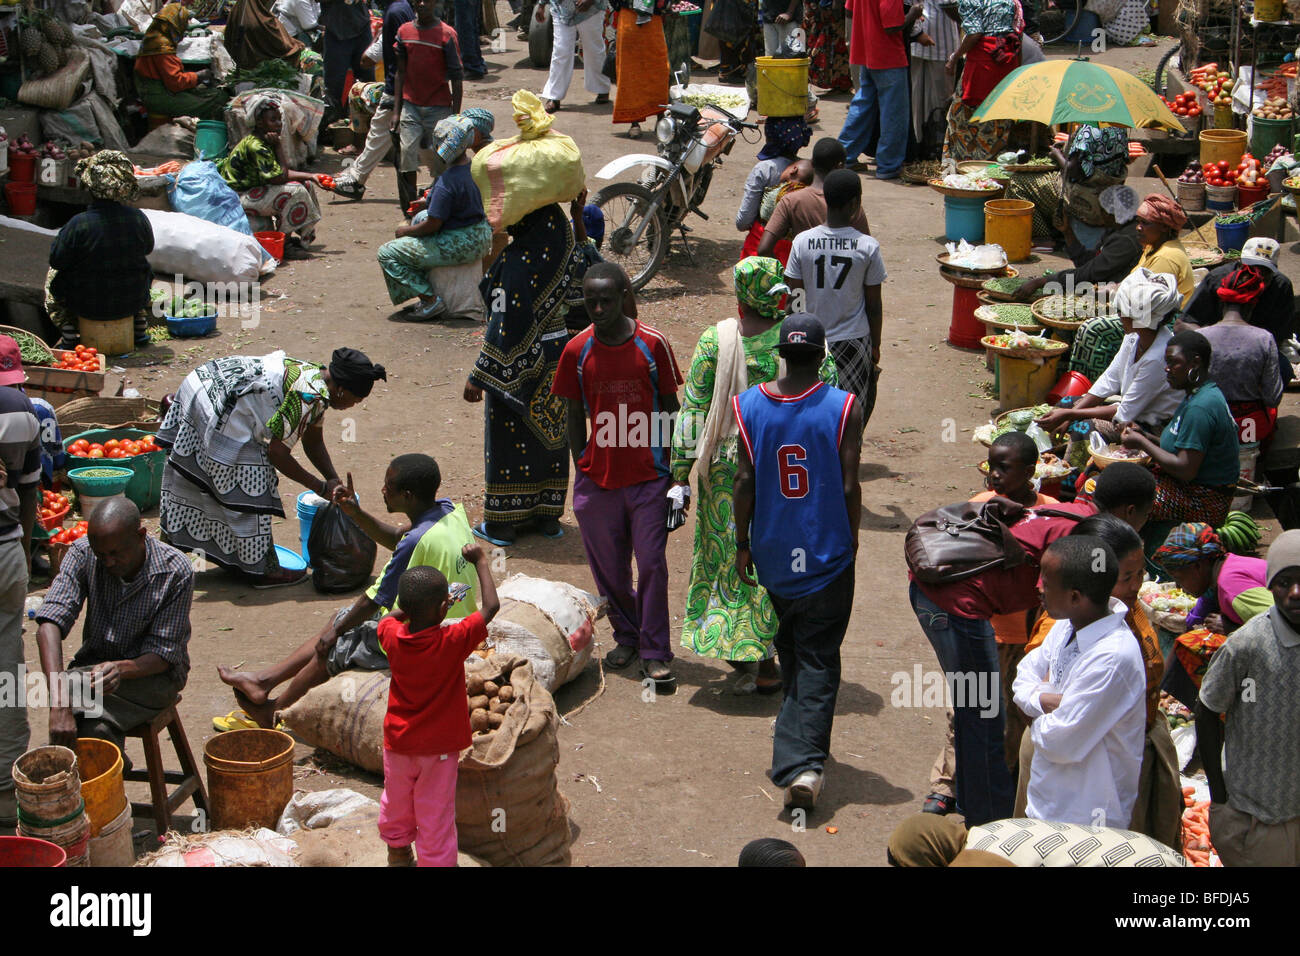 Vivace scena in Arusha è affollato mercato centrale, Tanzania Foto Stock